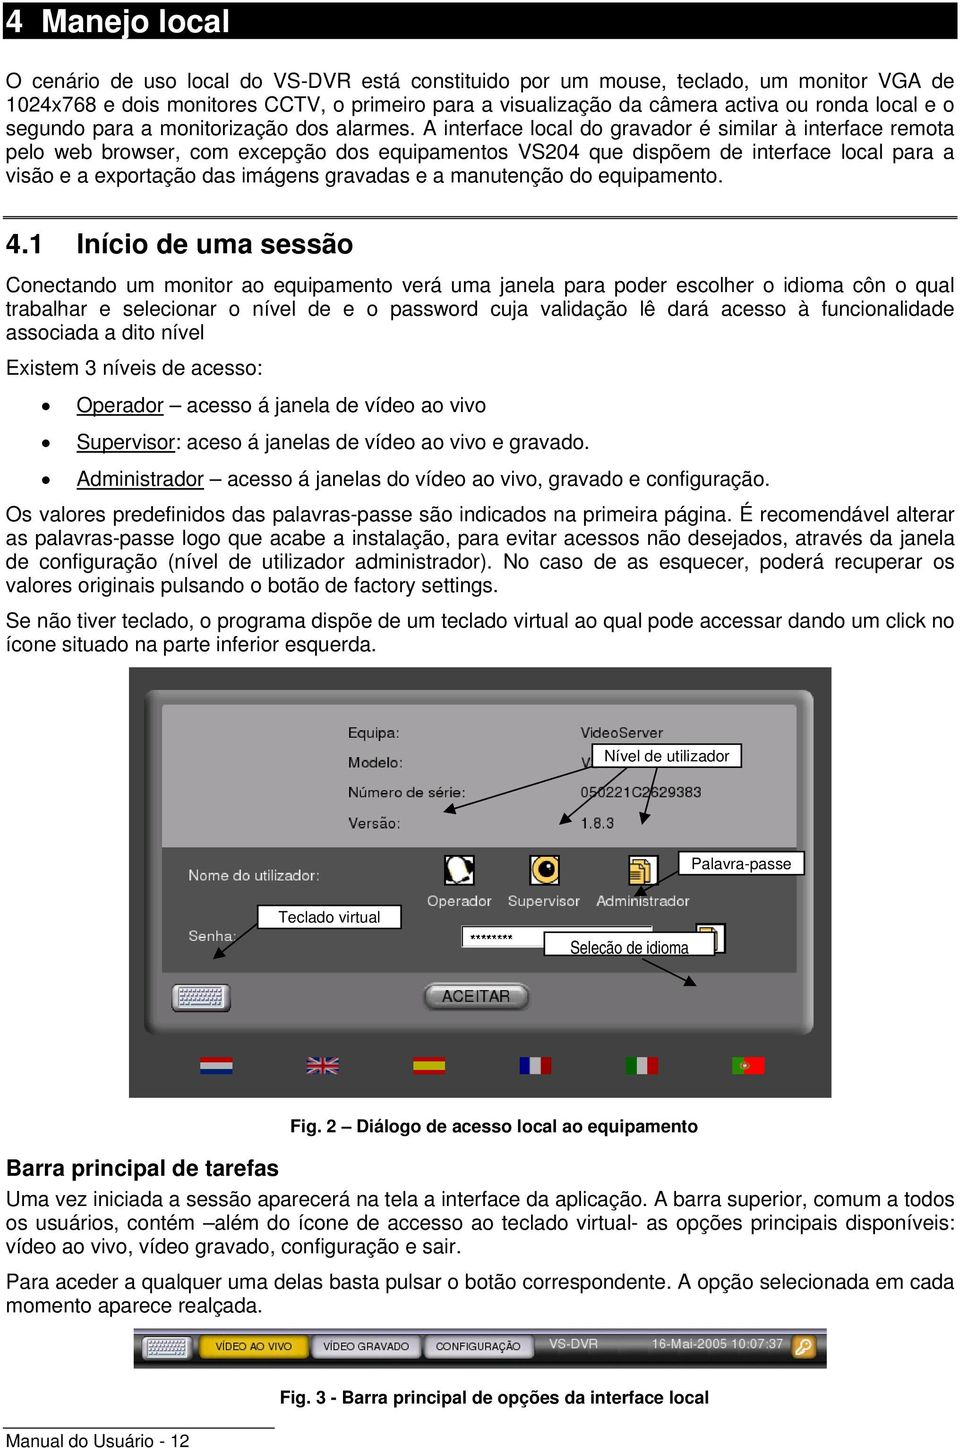 A interface local do gravador é similar à interface remota pelo web browser, com excepção dos equipamentos VS204 que dispõem de interface local para a visão e a exportação das imágens gravadas e a